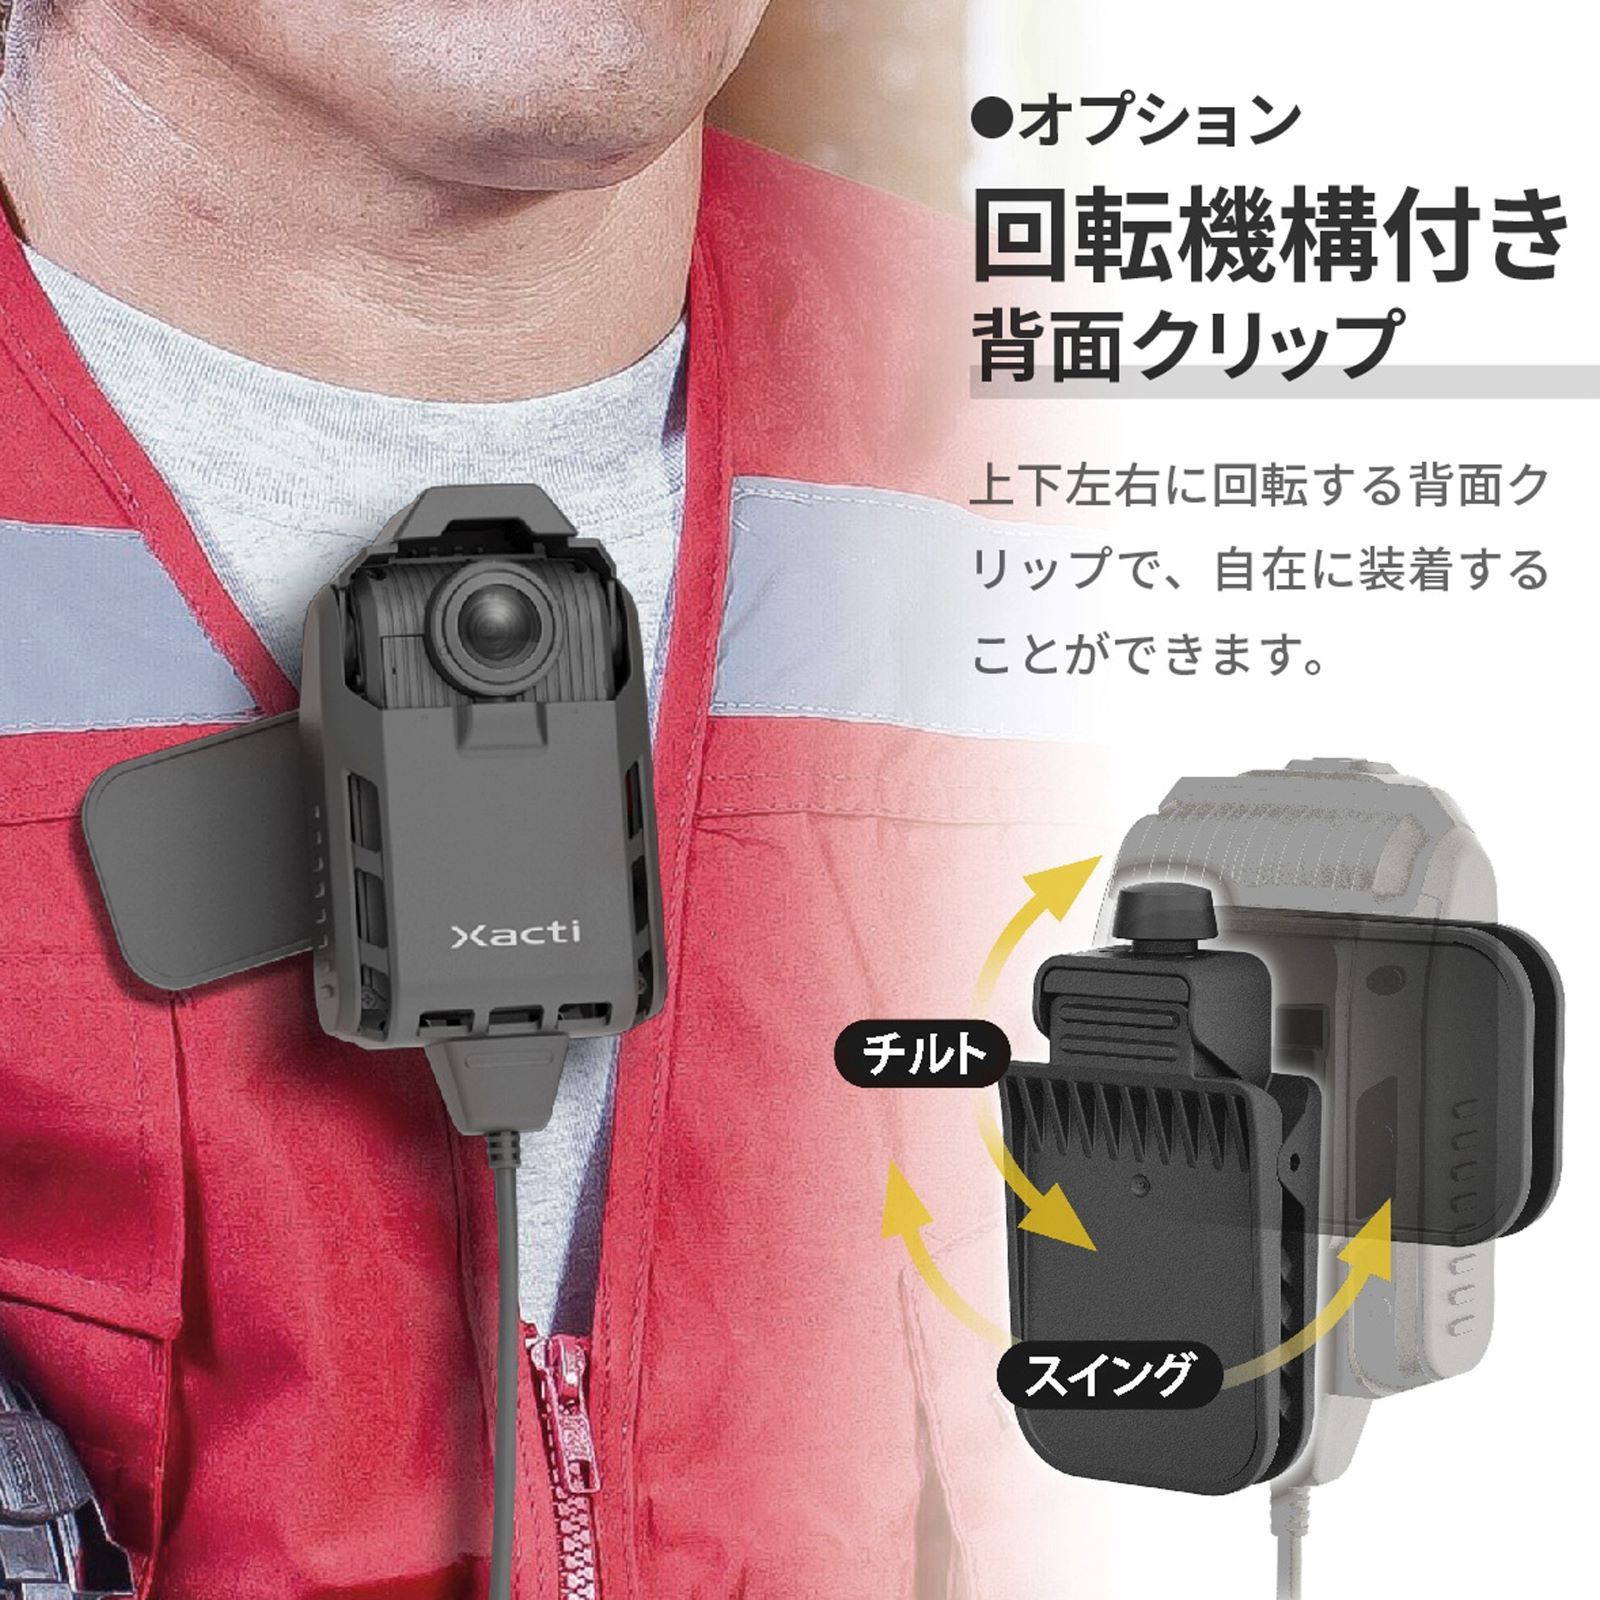 ザクティ 業務用ウェアラブルカメラ胸部装着タイプ CX-WE300 1台